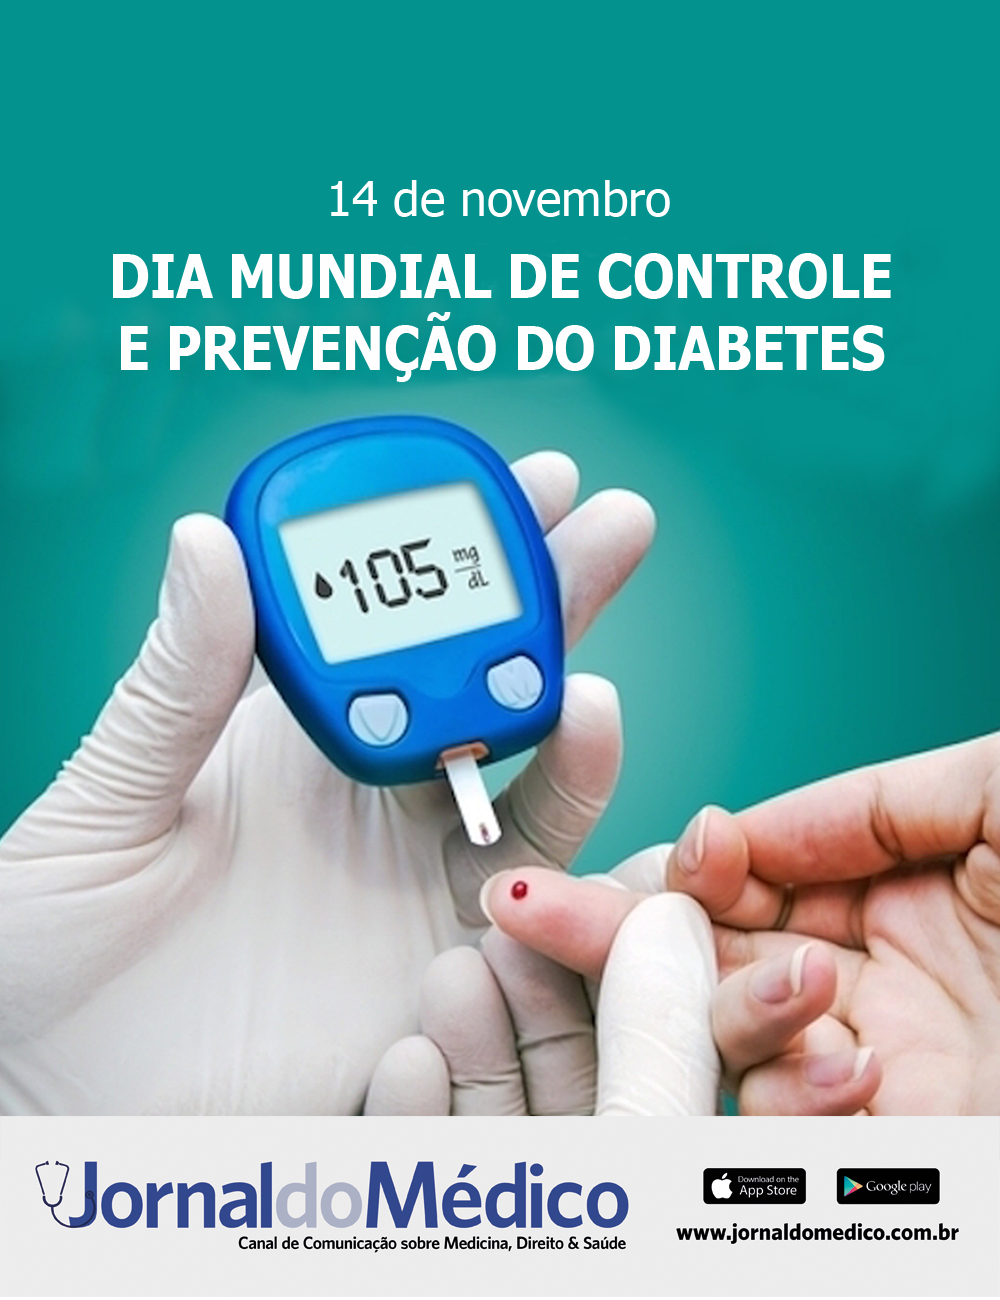 14 de novembro – Dia Mundial de Controle e Prevenção do Diabetes